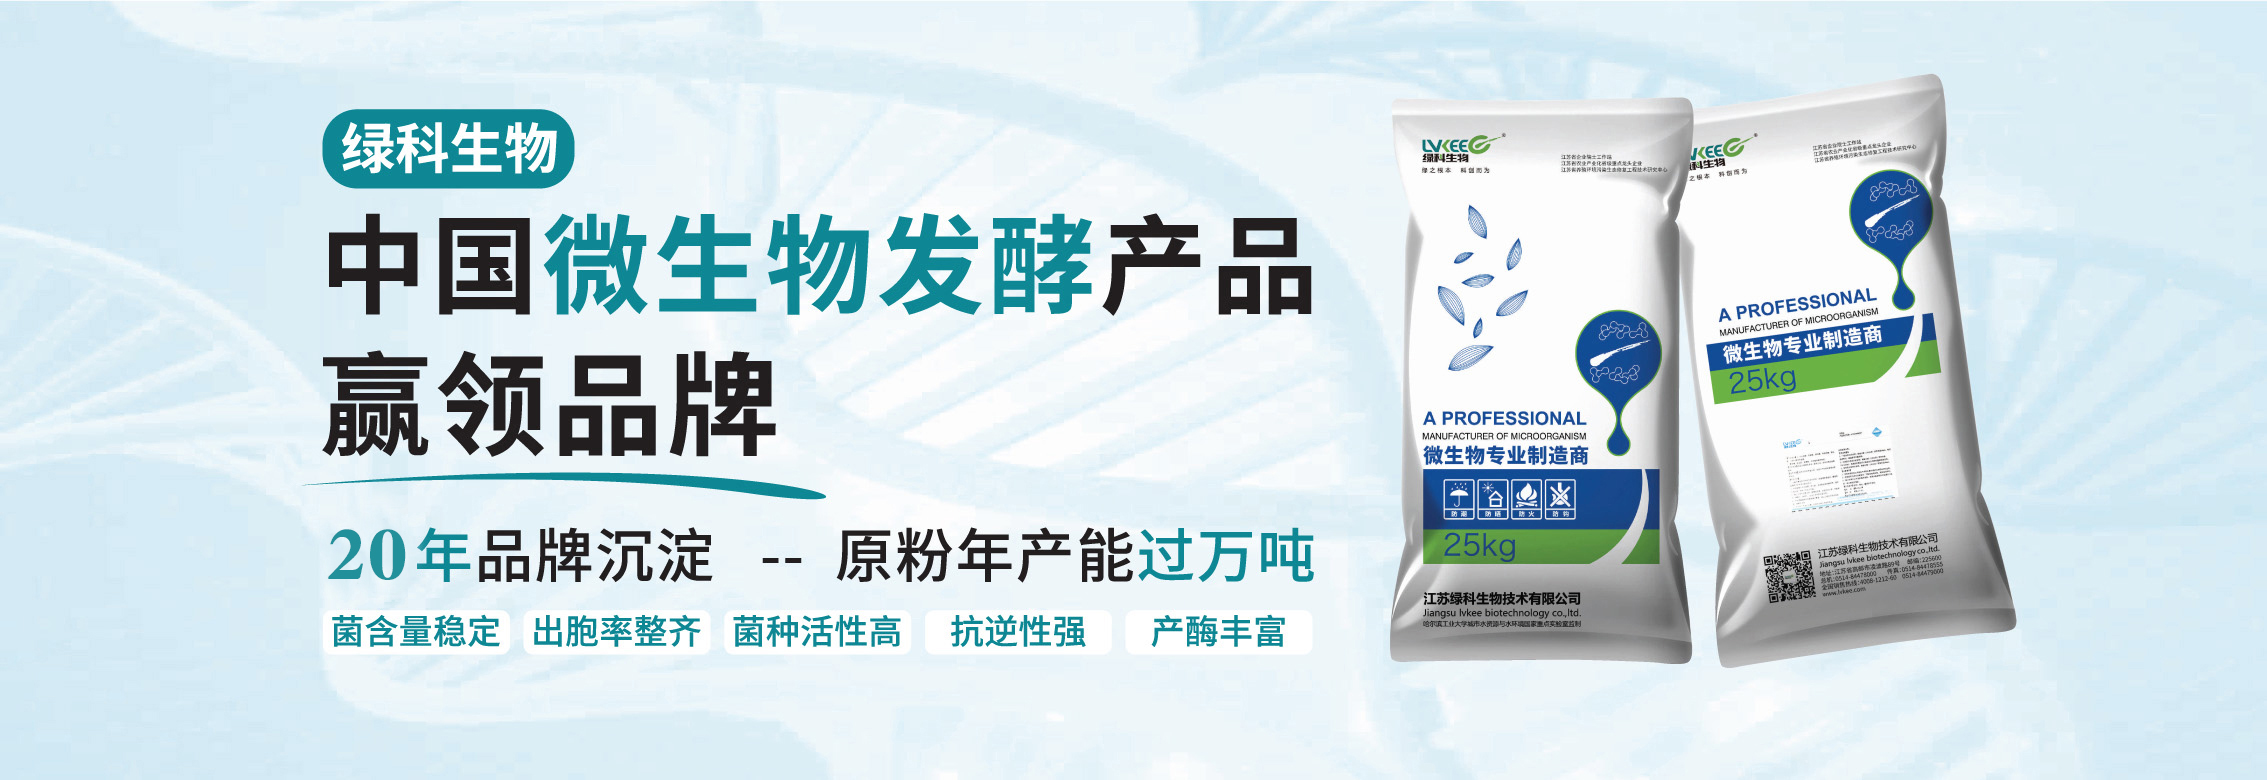 8868体育app致力于成为中国微生物发酵产品赢领品牌